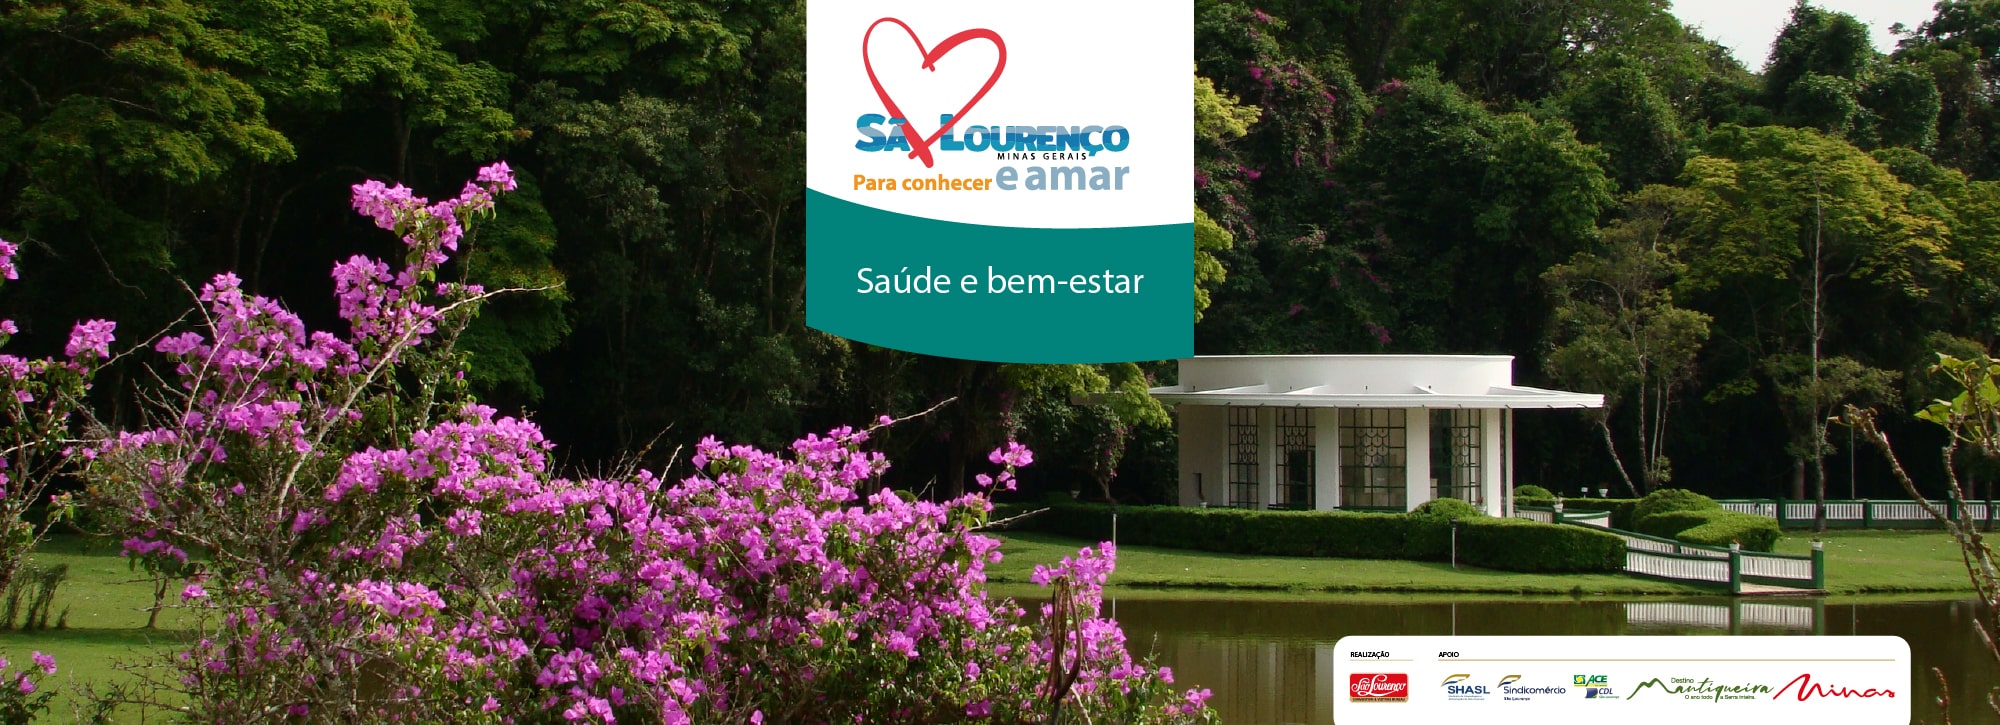 São Lourenço Convention & Visitors Bureau | Biblioteca de Turismo em São Lourenço